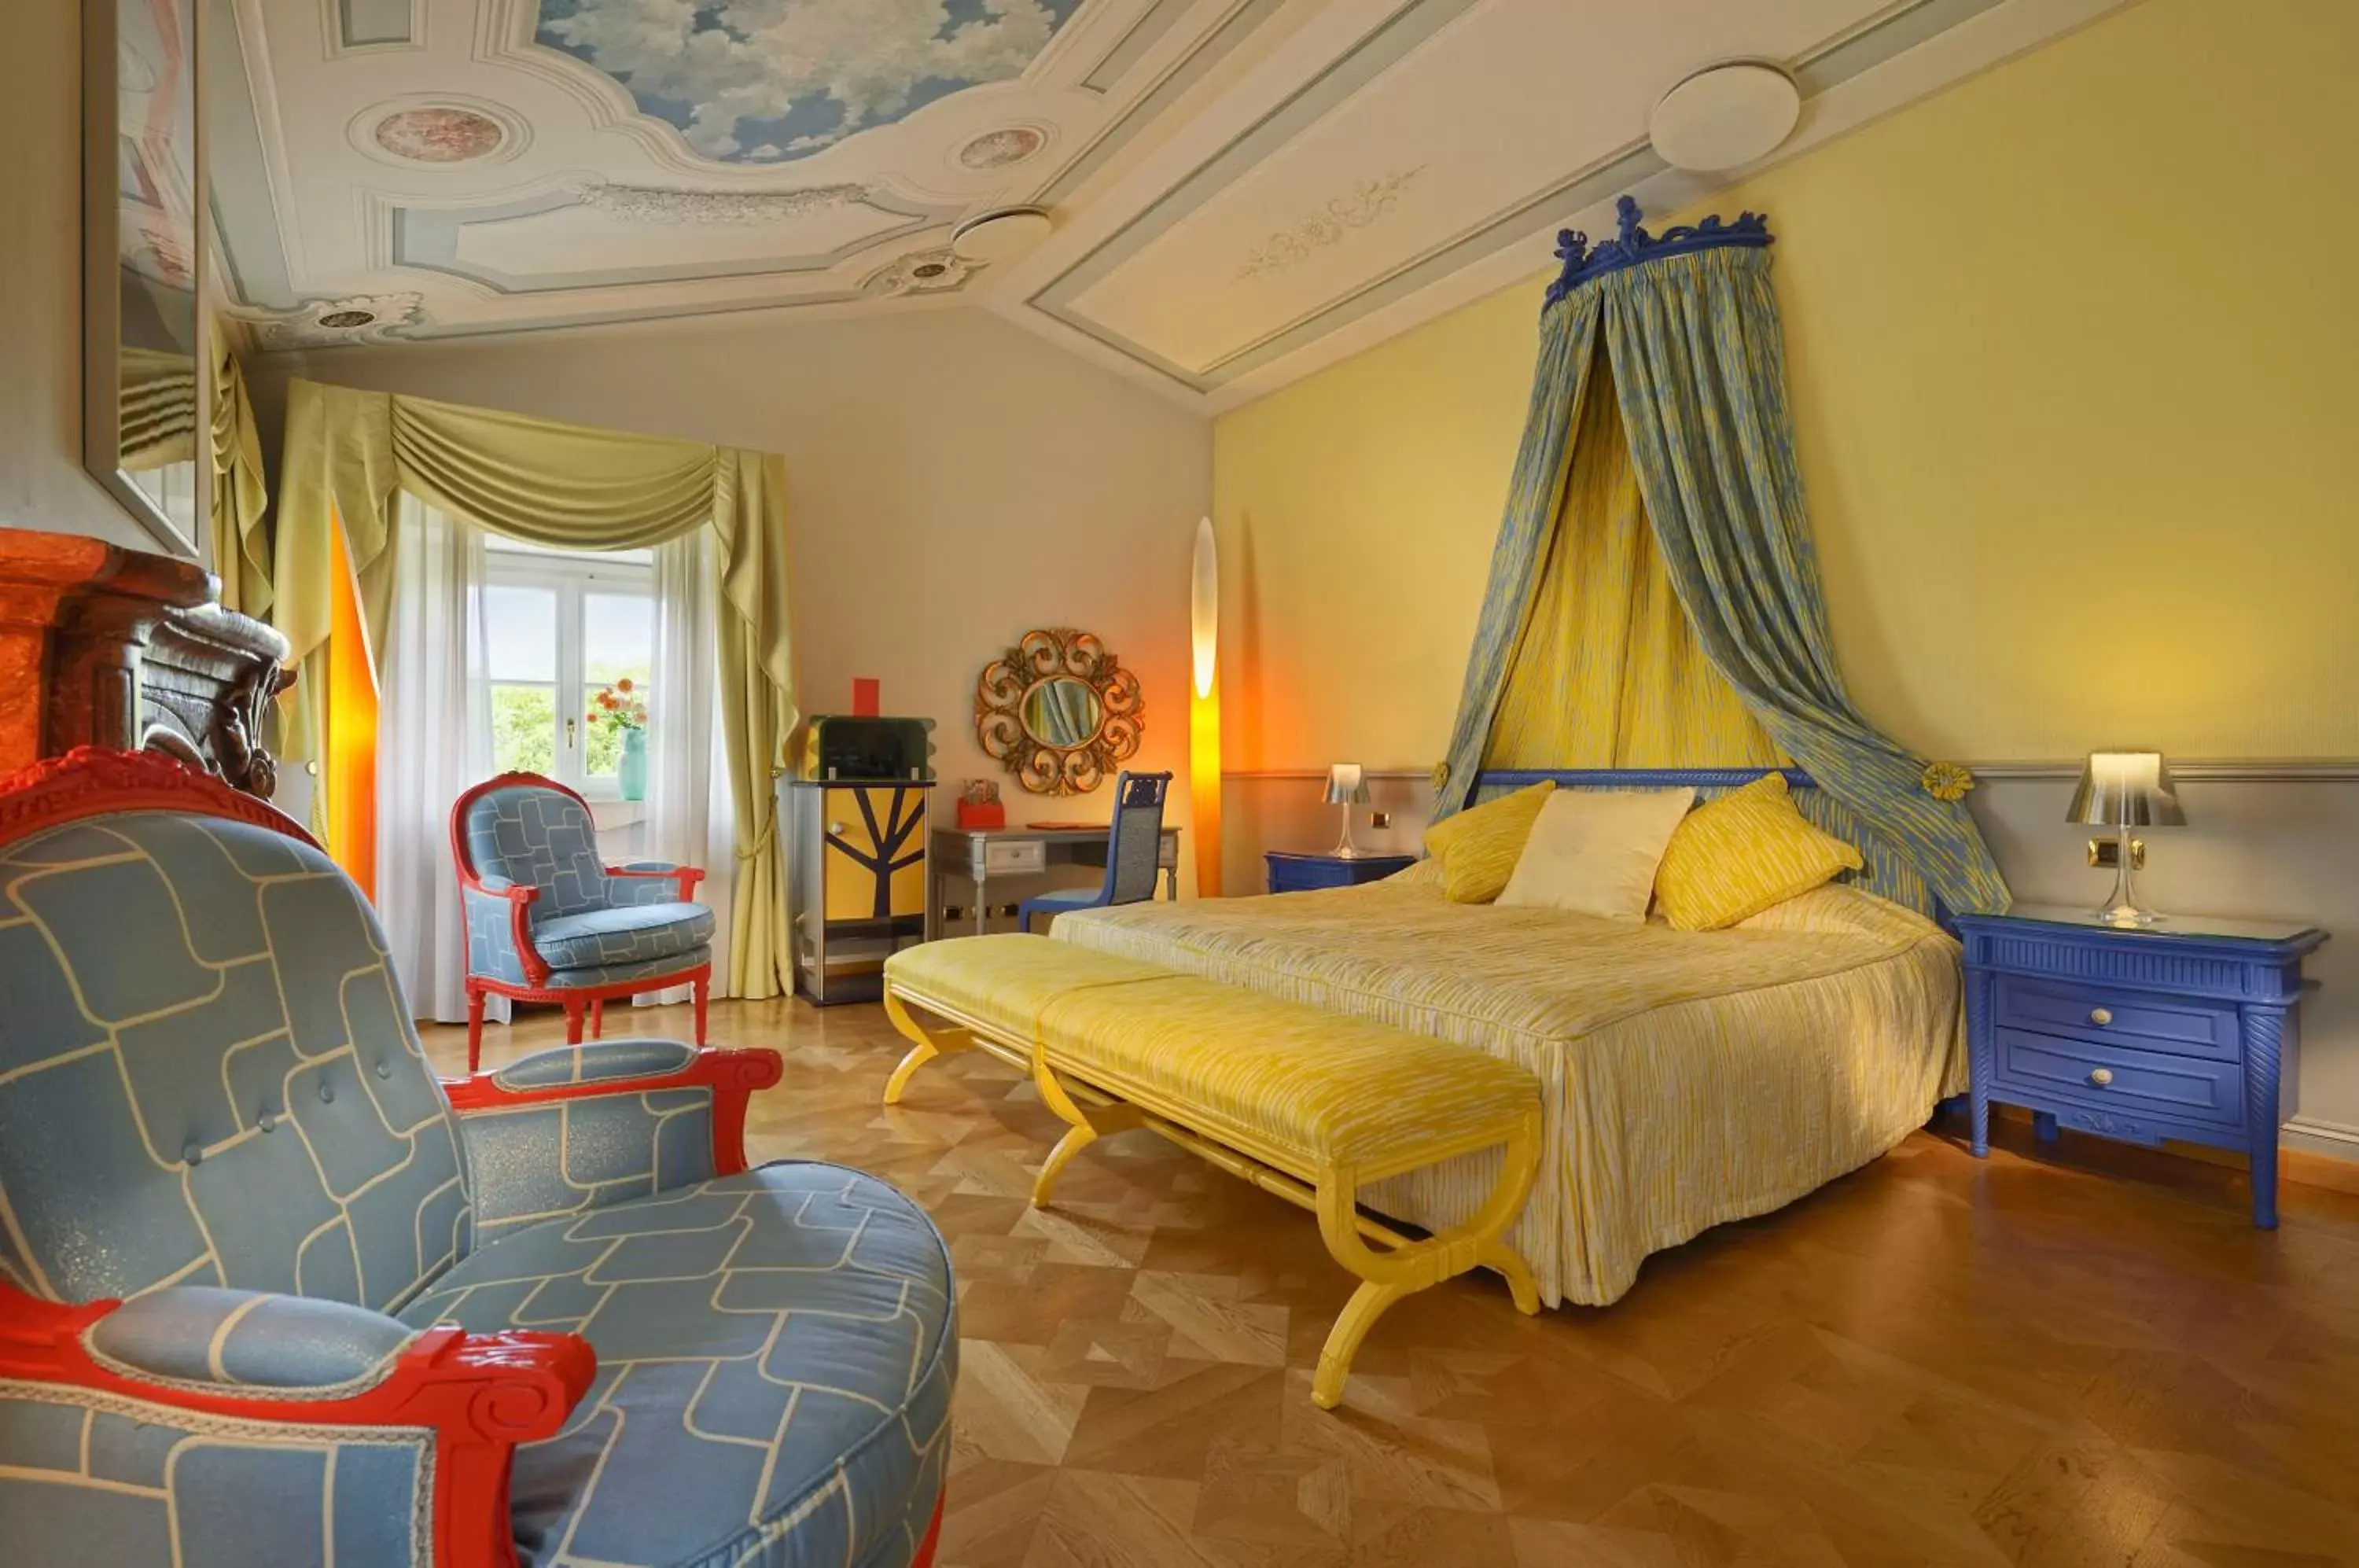 Bedroom in Byblos Art Hotel Villa Amistà